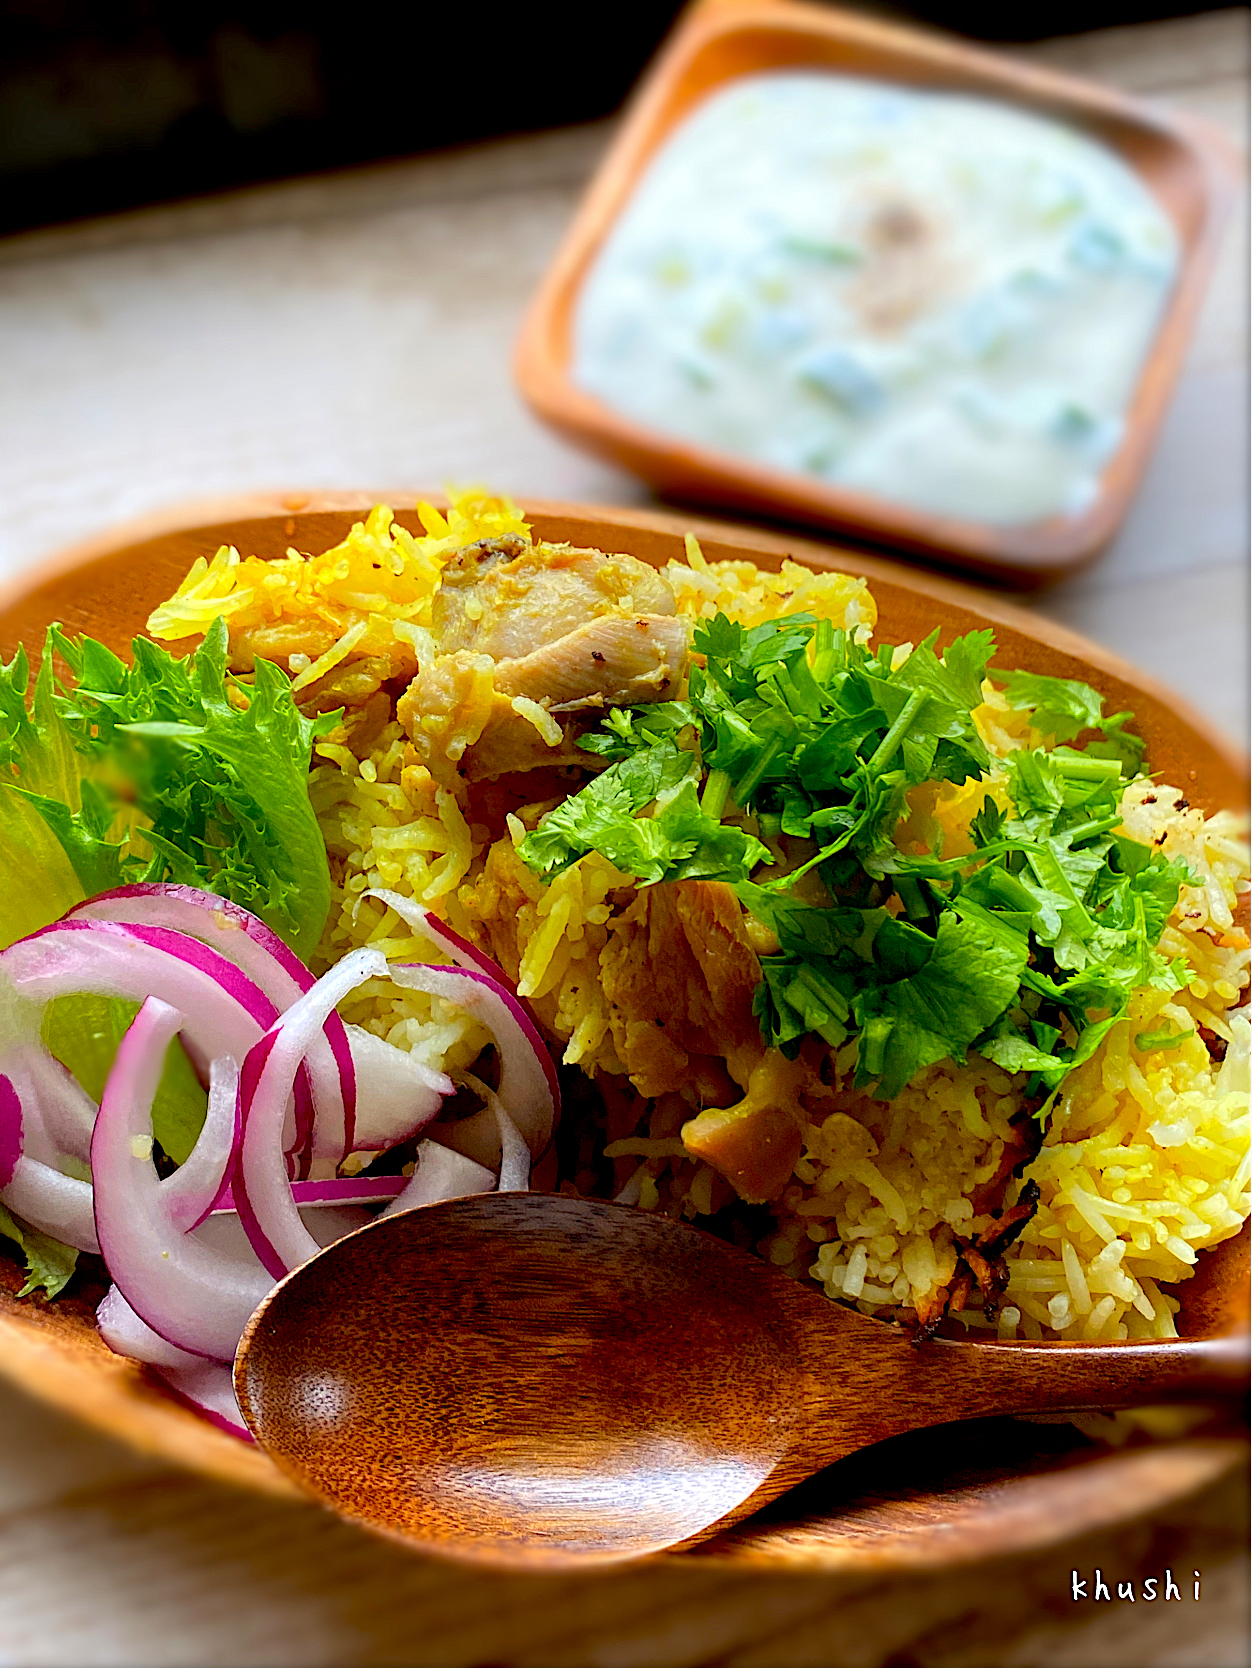 インド料理「ビリヤニ」とは？歴史や食べ方、おすすめレシピを解説！の画像